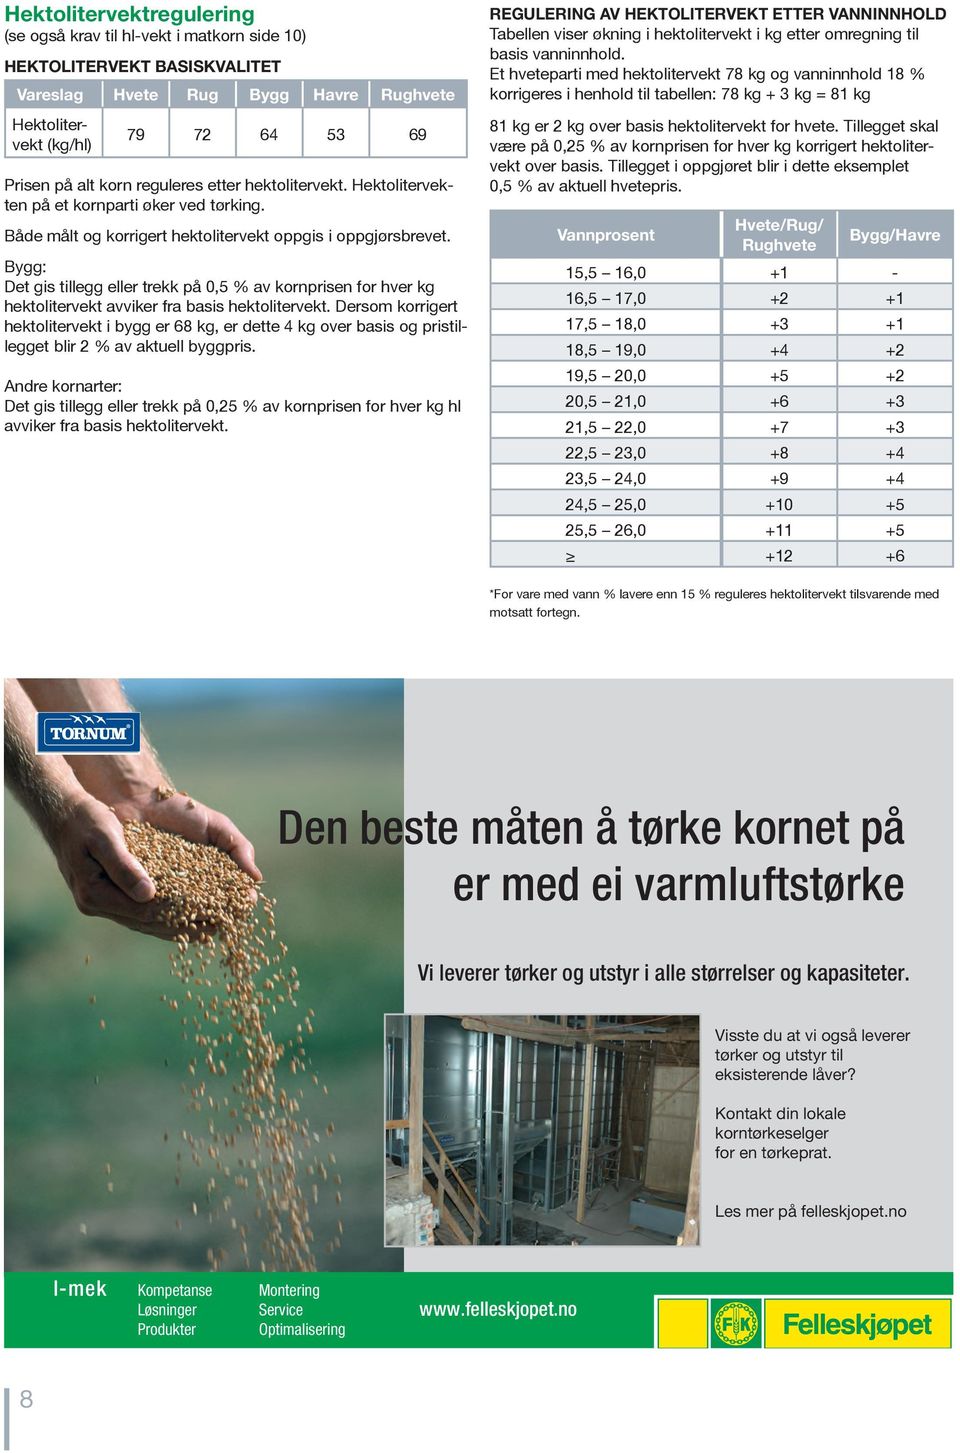 Bygg: Det gis tillegg eller trekk på 0,5 % av kornprisen for hver kg hektolitervekt avviker fra basis hektolitervekt.